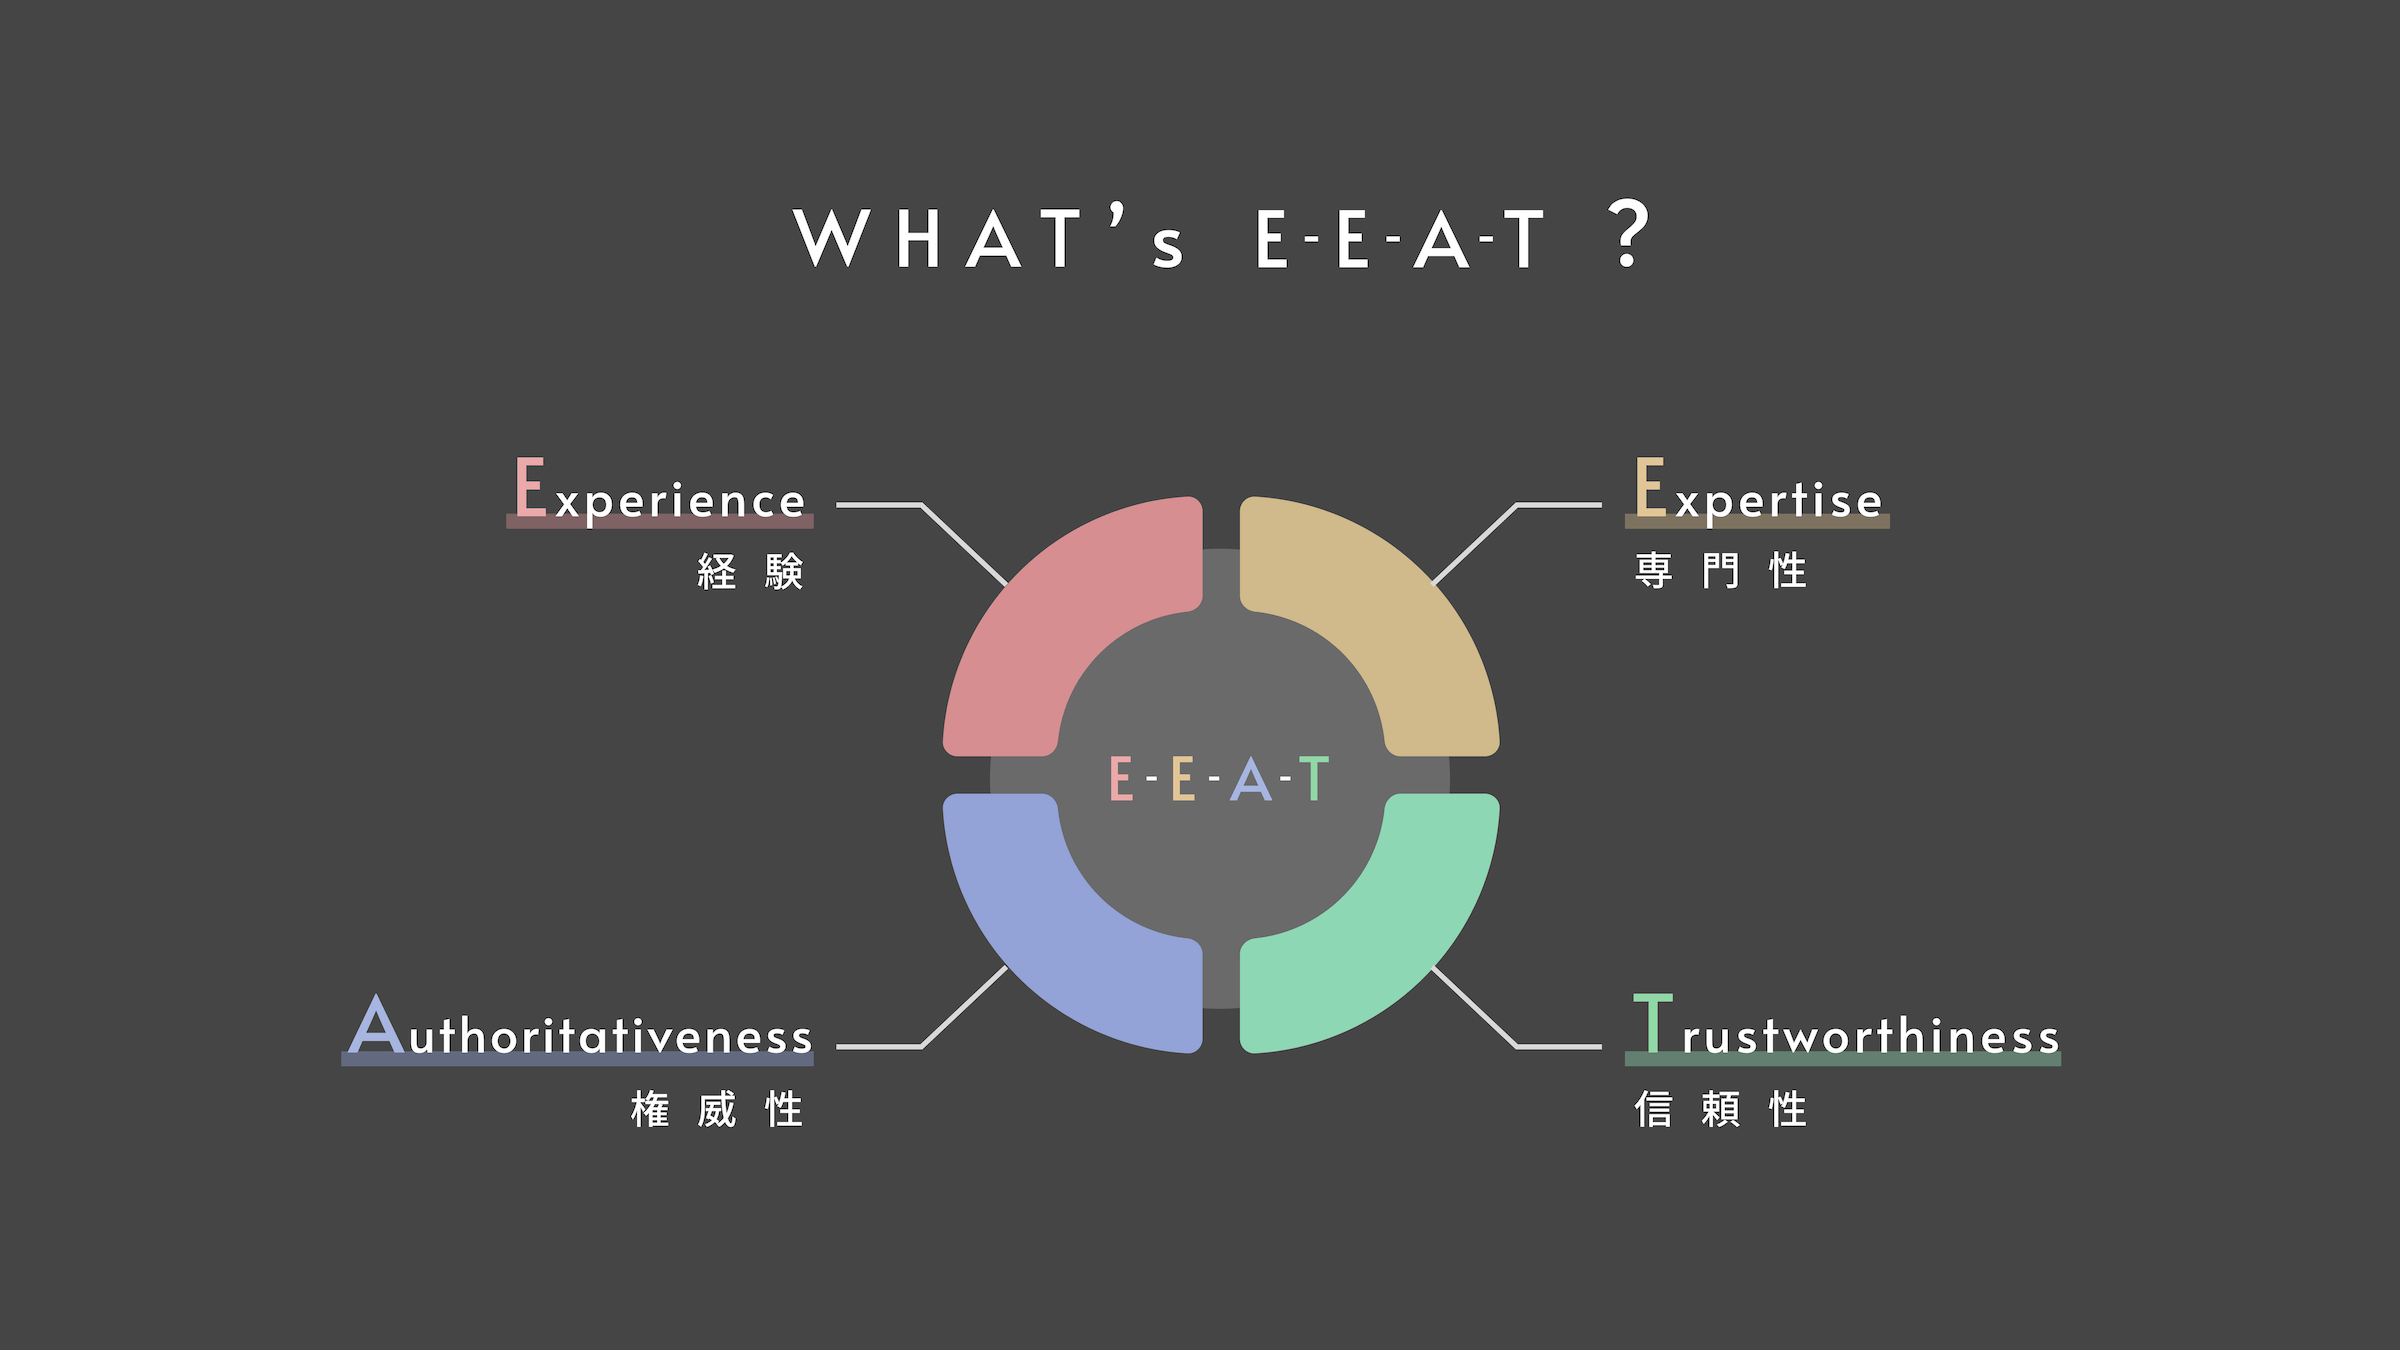 E-E-A-T